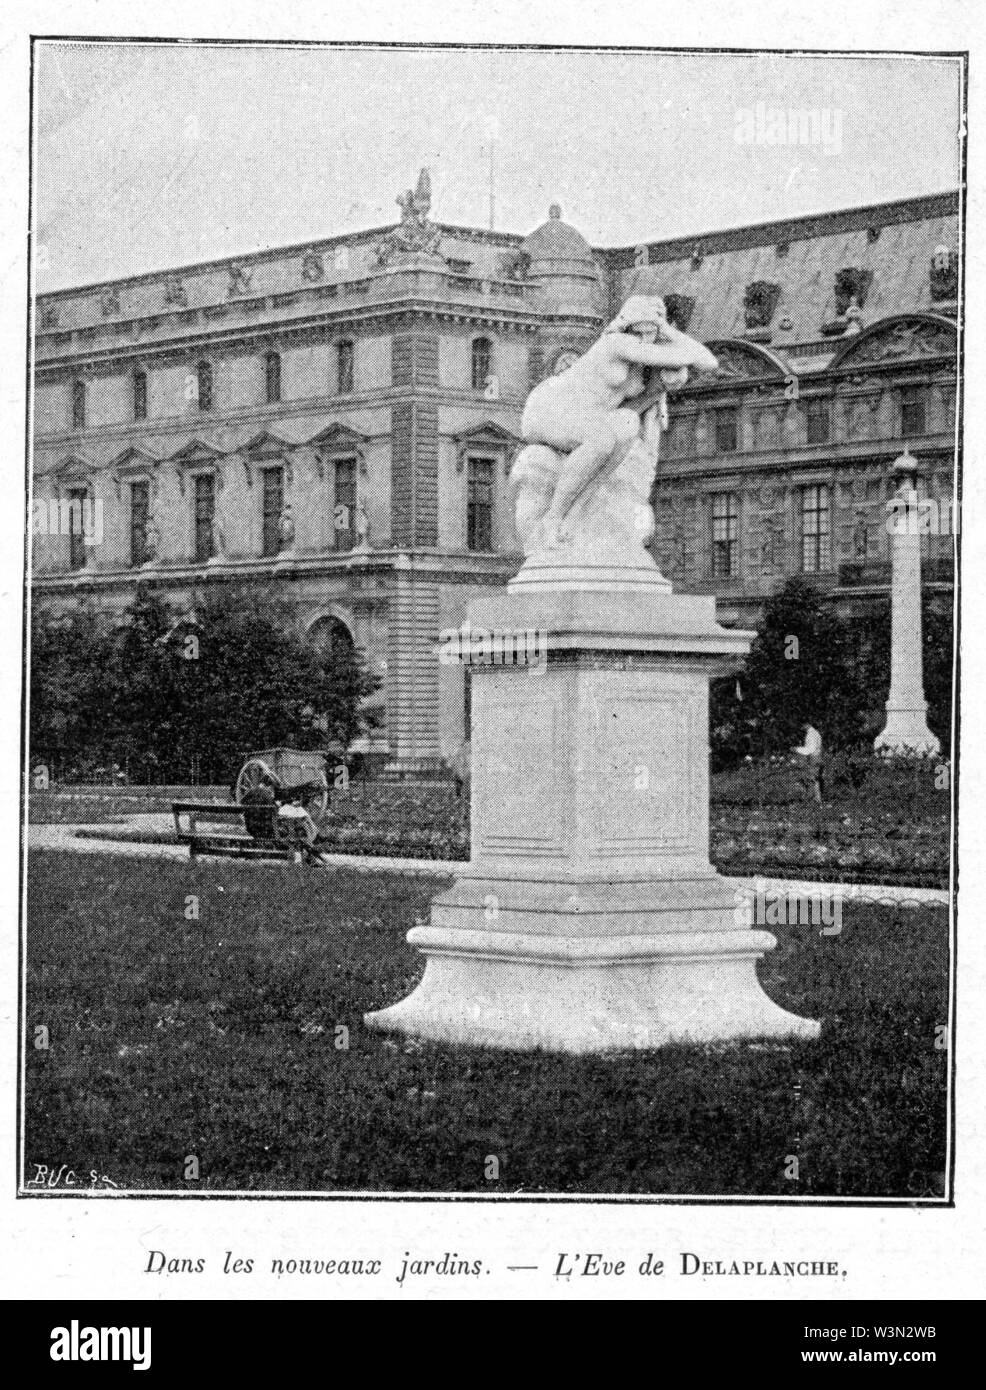 Clément Maurice Paris en plein air, BUC, 1897,052 Dans les nouveaux Jardins, L'Eve de DELAPLANCHE. Stockfoto